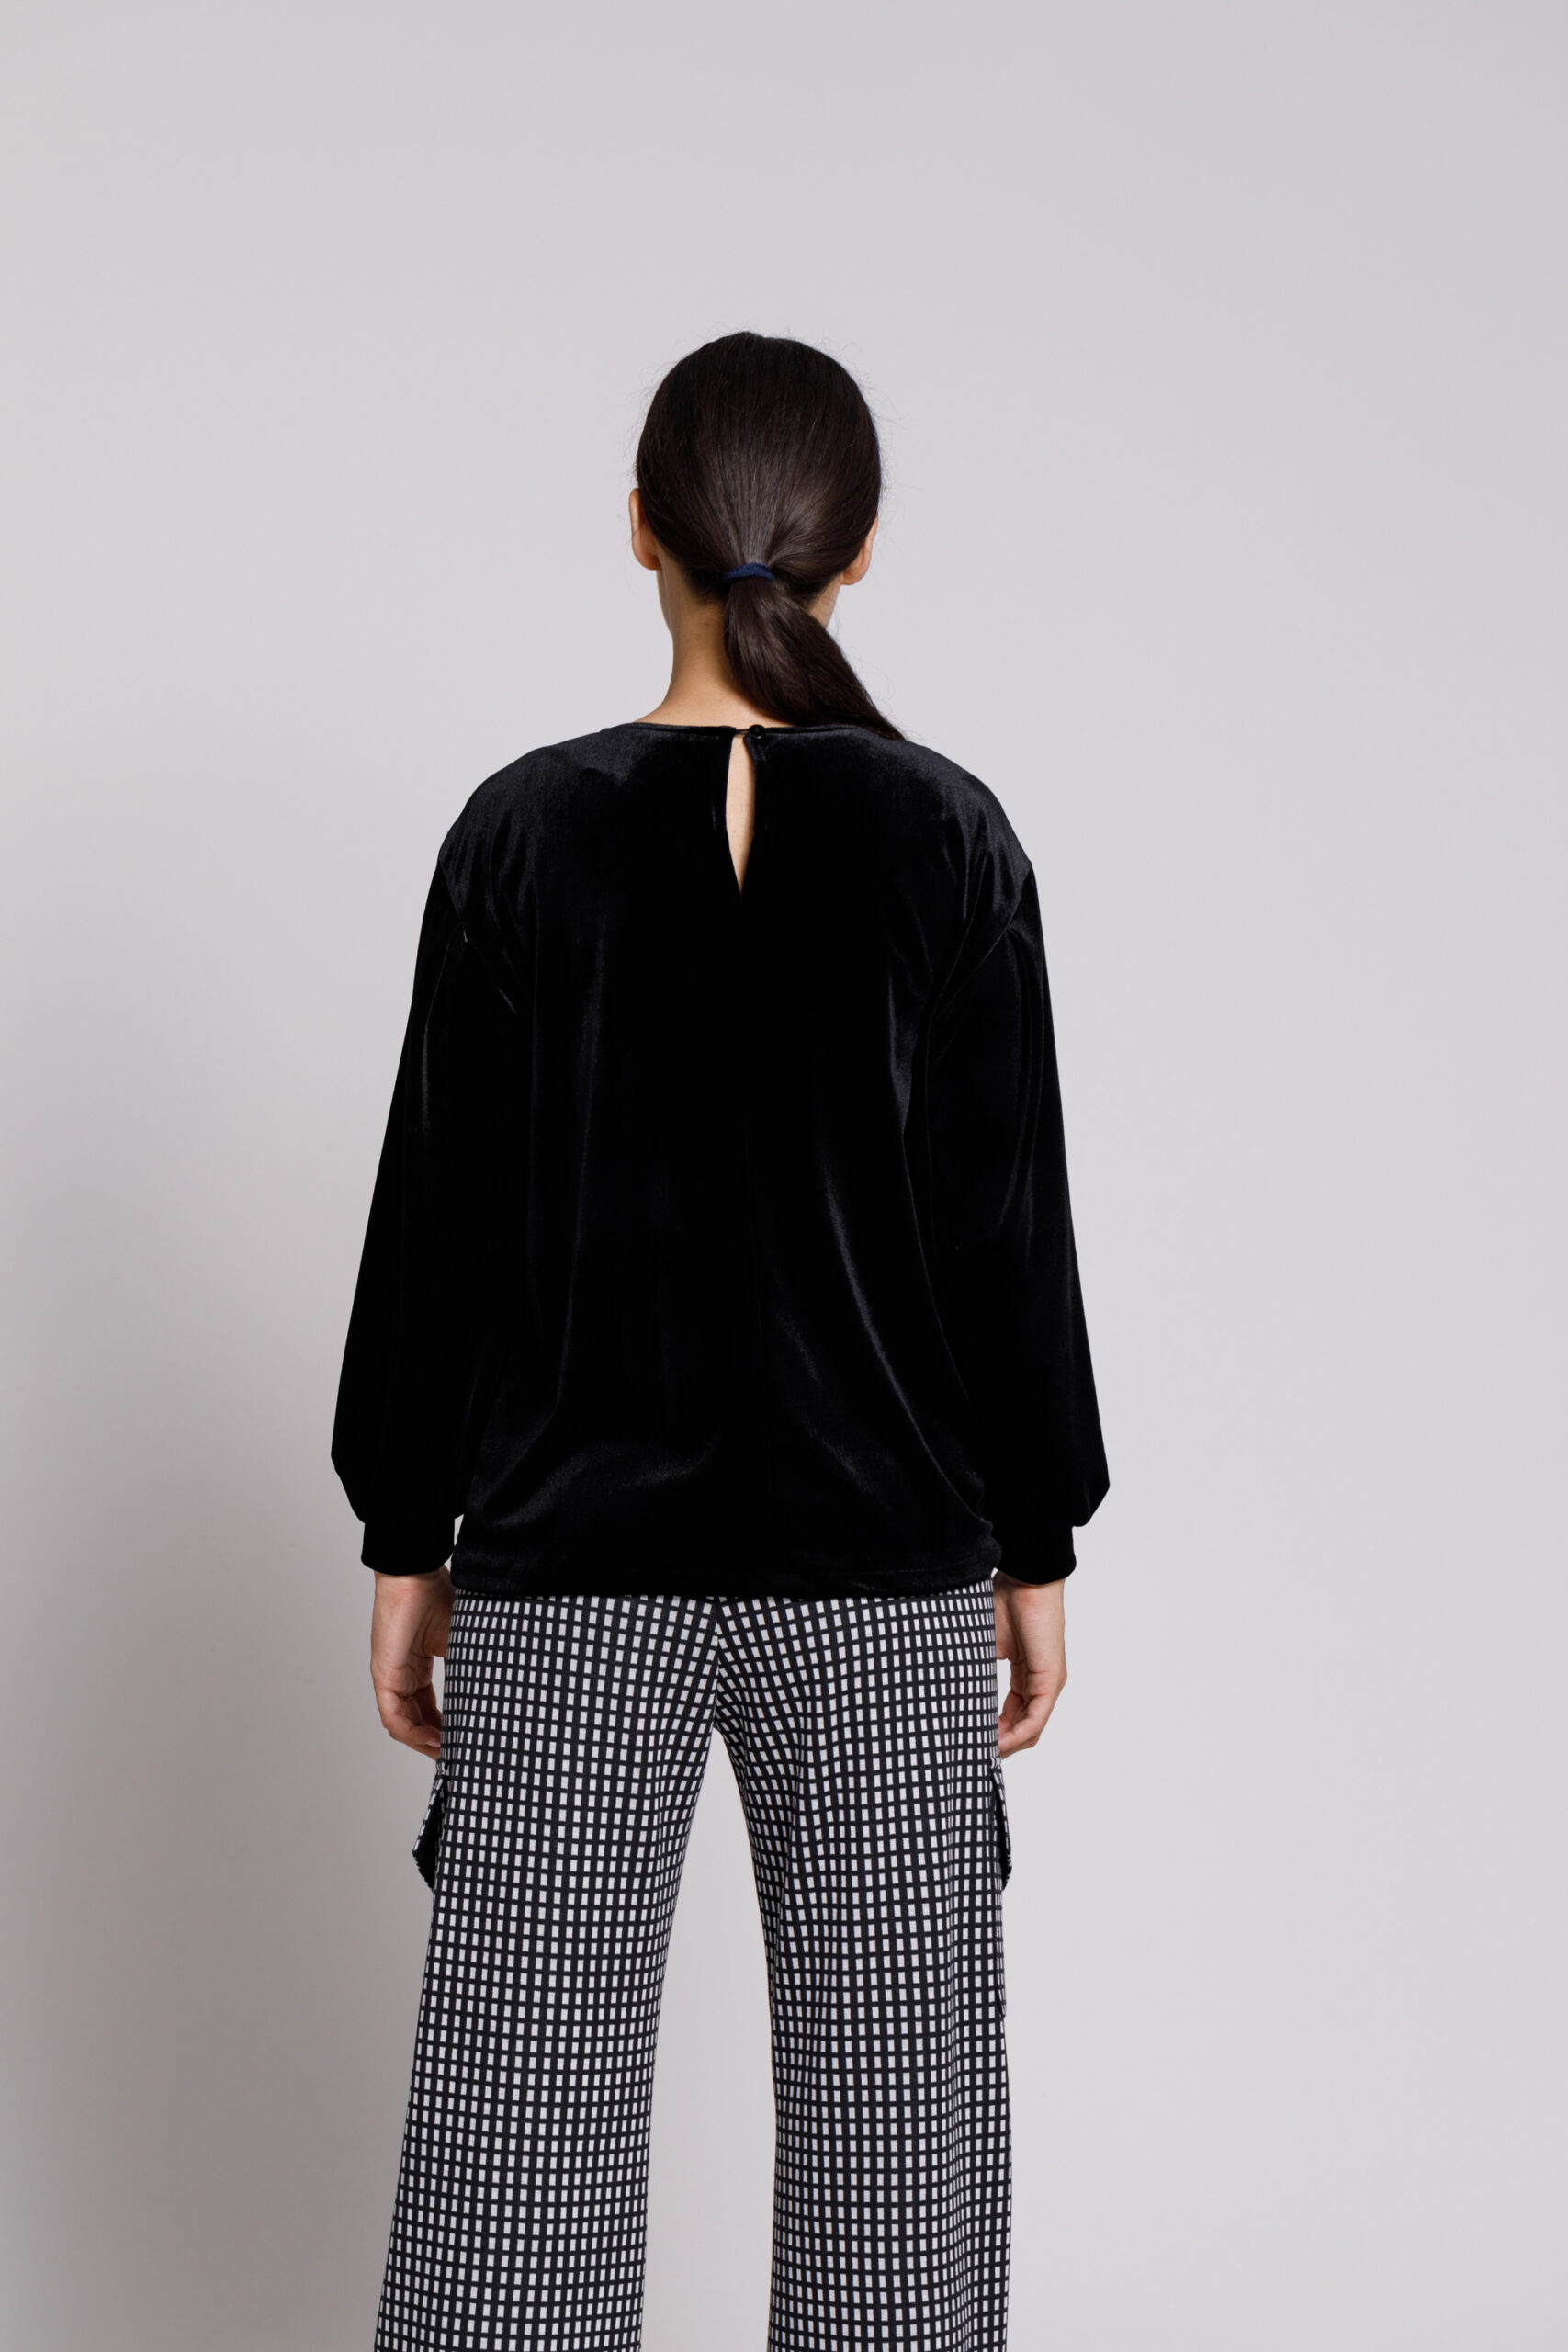 Bluza EVE casual din catifea neagra. Materiale naturale, design unicat, cu broderie si aplicatii handmade